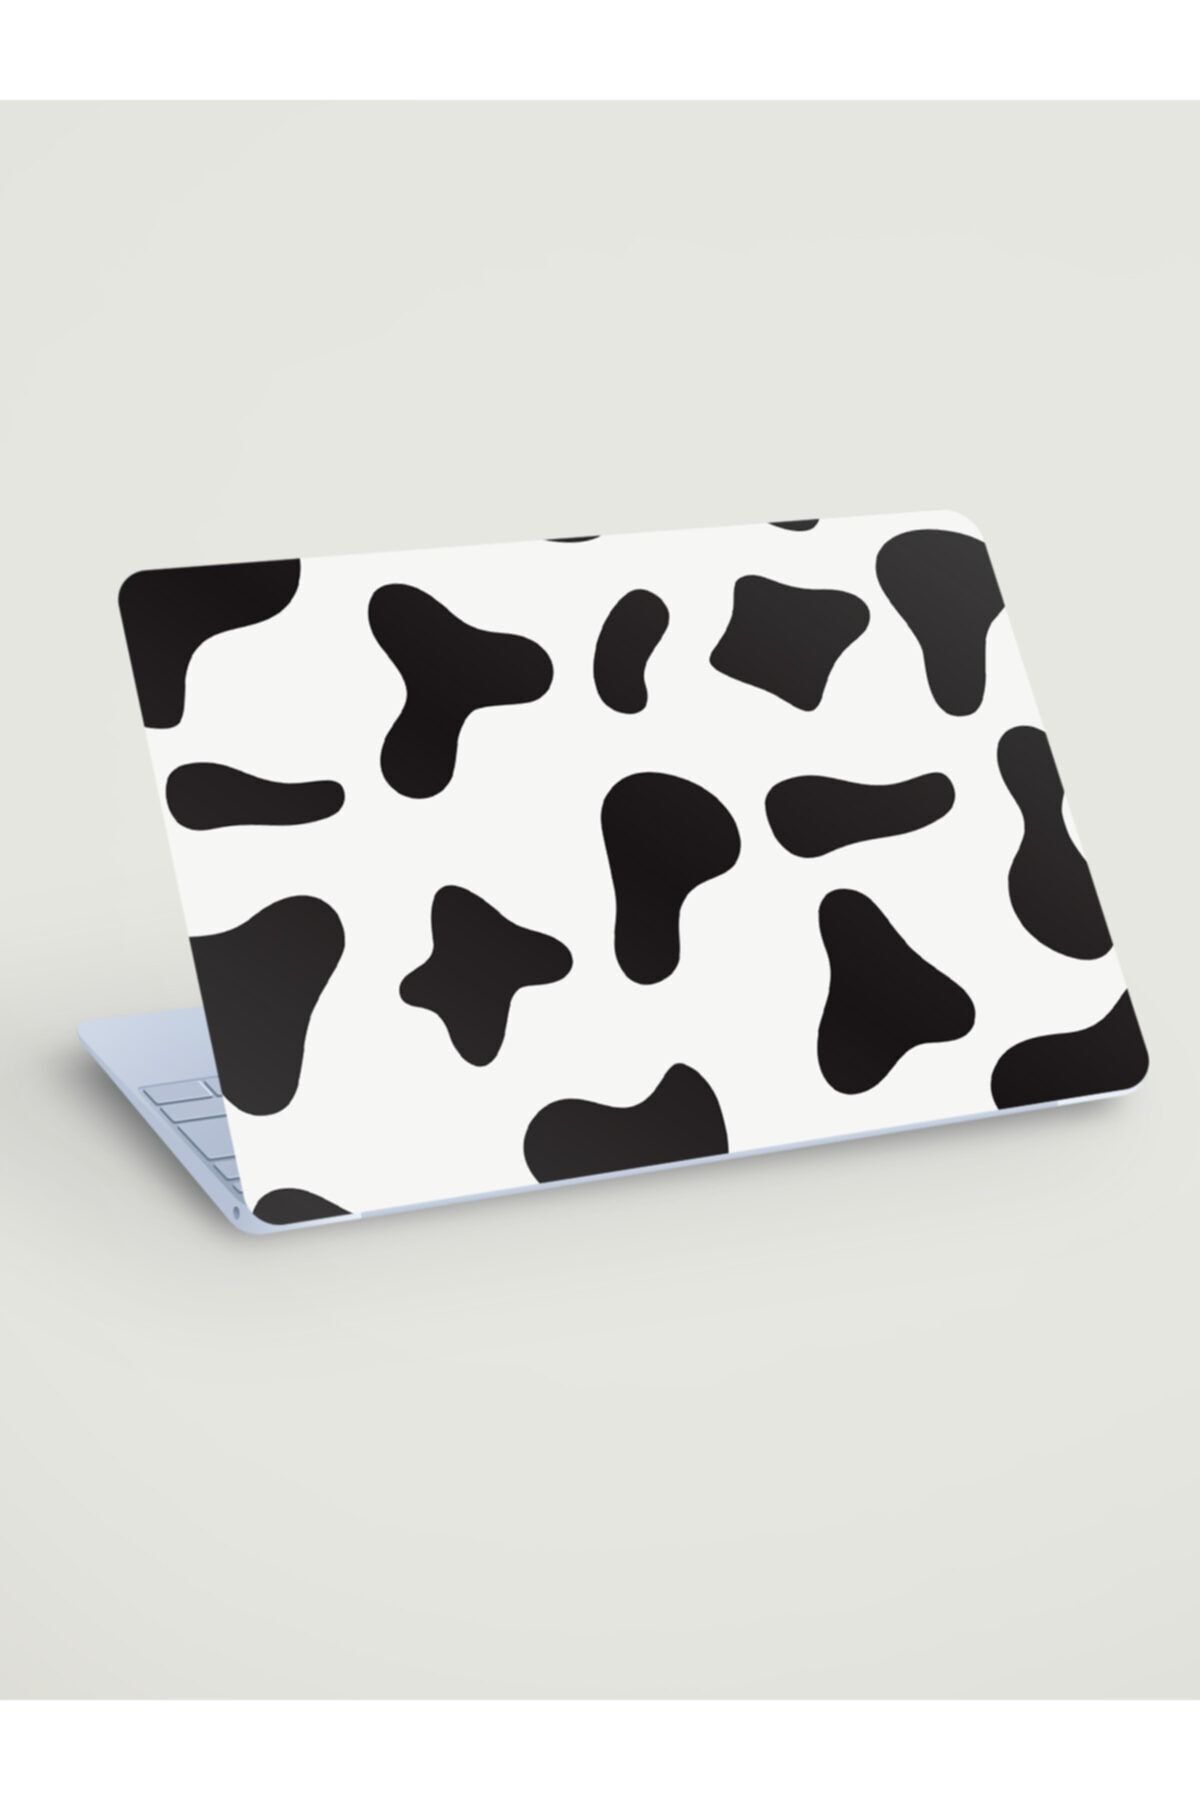 akcepazar Inek Dalmaçya Desen Cow Dalmatia Pattern Defter, Tablet, Laptop Üzerine Kaplama Için Sticker